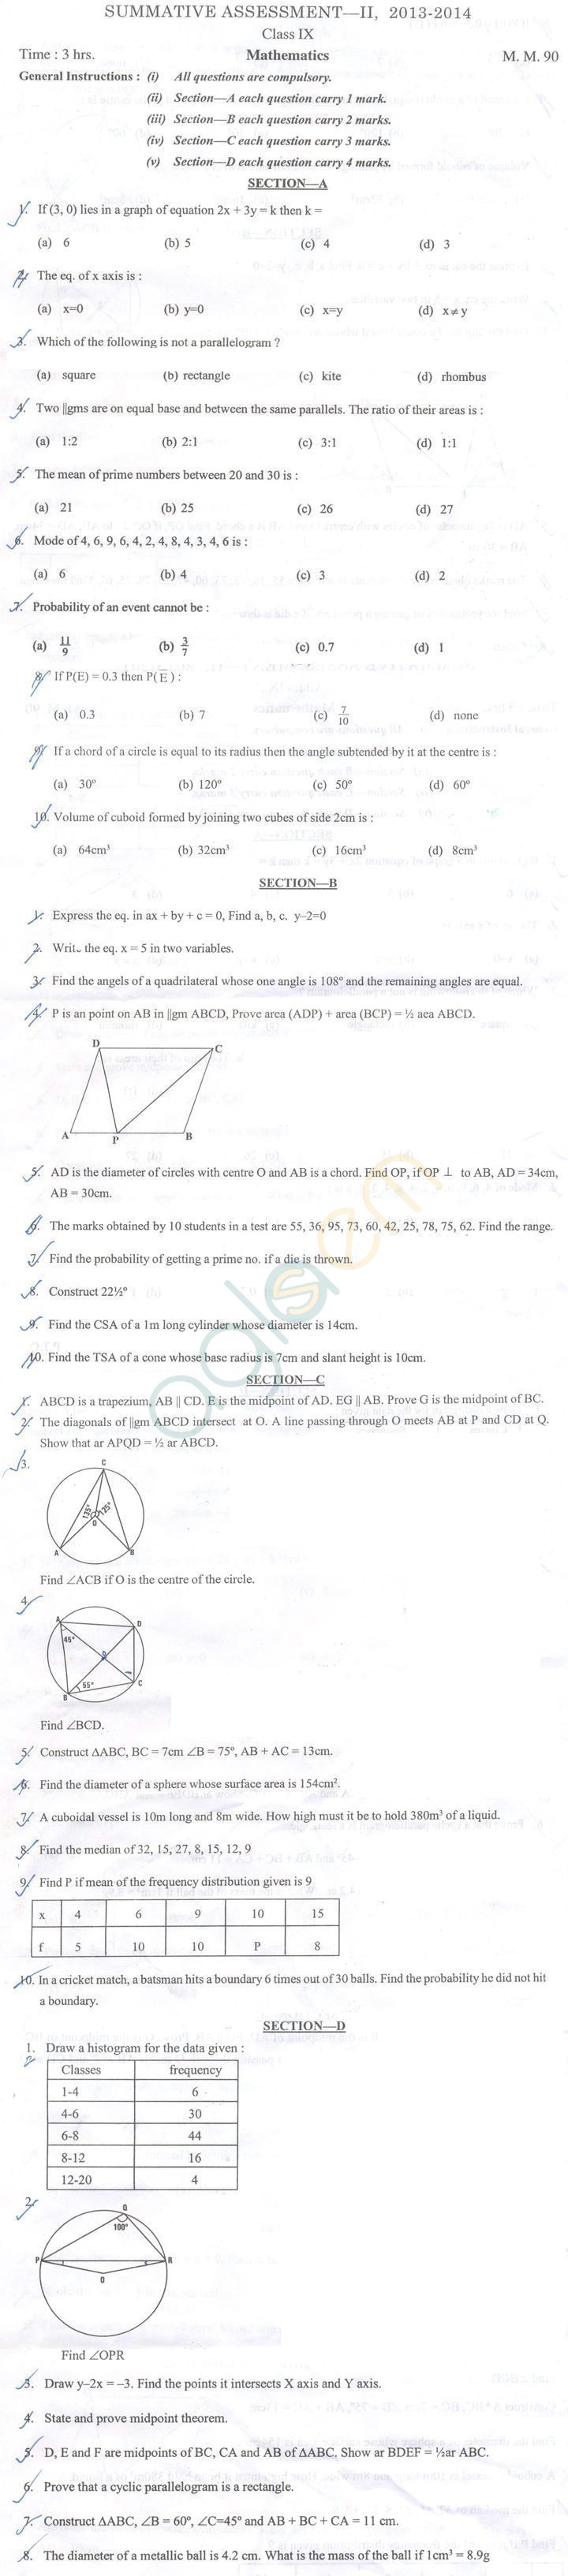 CBSE Class 9 Question Paper 2014 Maths SA2